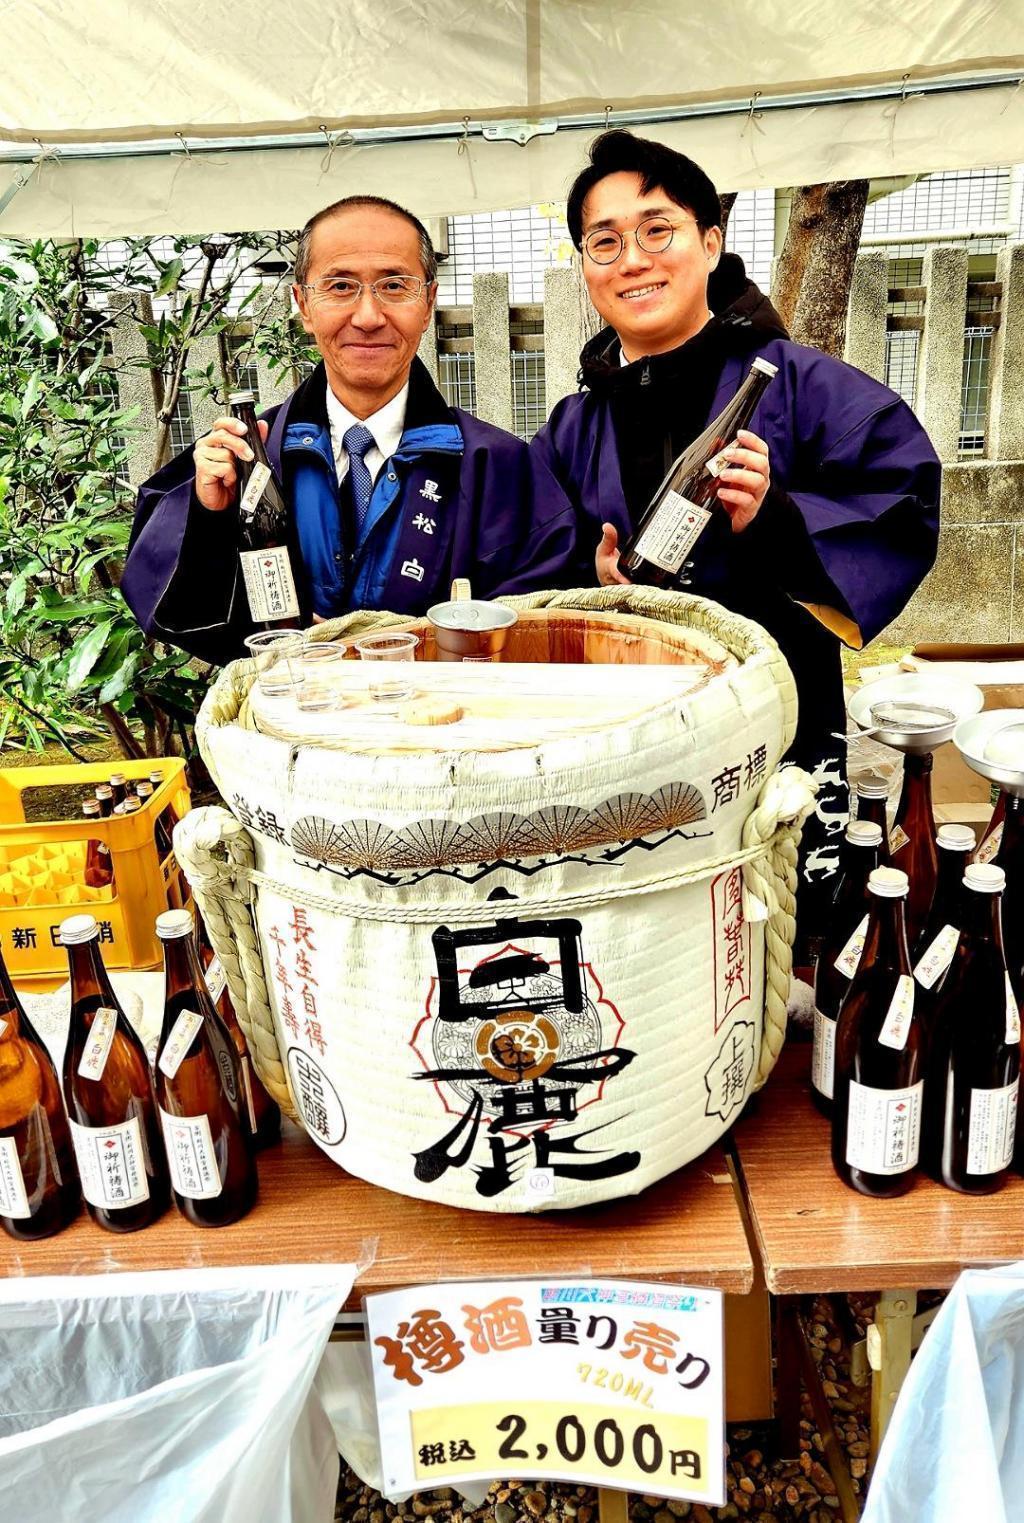  江戸下り酒文化伝承の地「新川」で店を構える「辰馬本家酒造」さん、東日本支店長にインタビューしました！